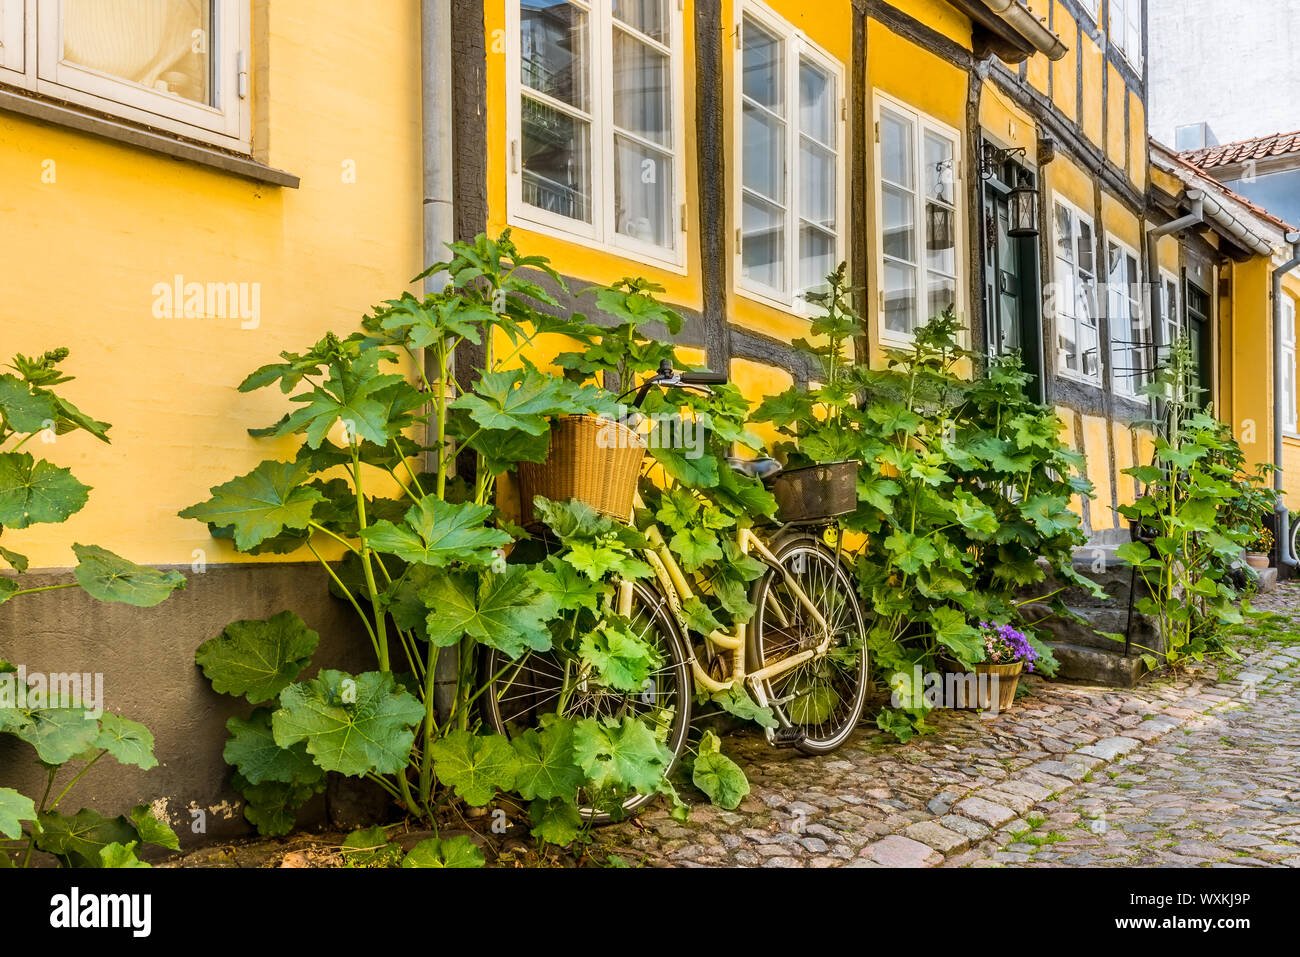 Yellow Bike überwachsen mit hollyhooks, gegen die Wand eines alten Hälfte schiefe Fachwerkhaus in Faaborg, Dänemark, 12. Juli 2019 Stockfoto